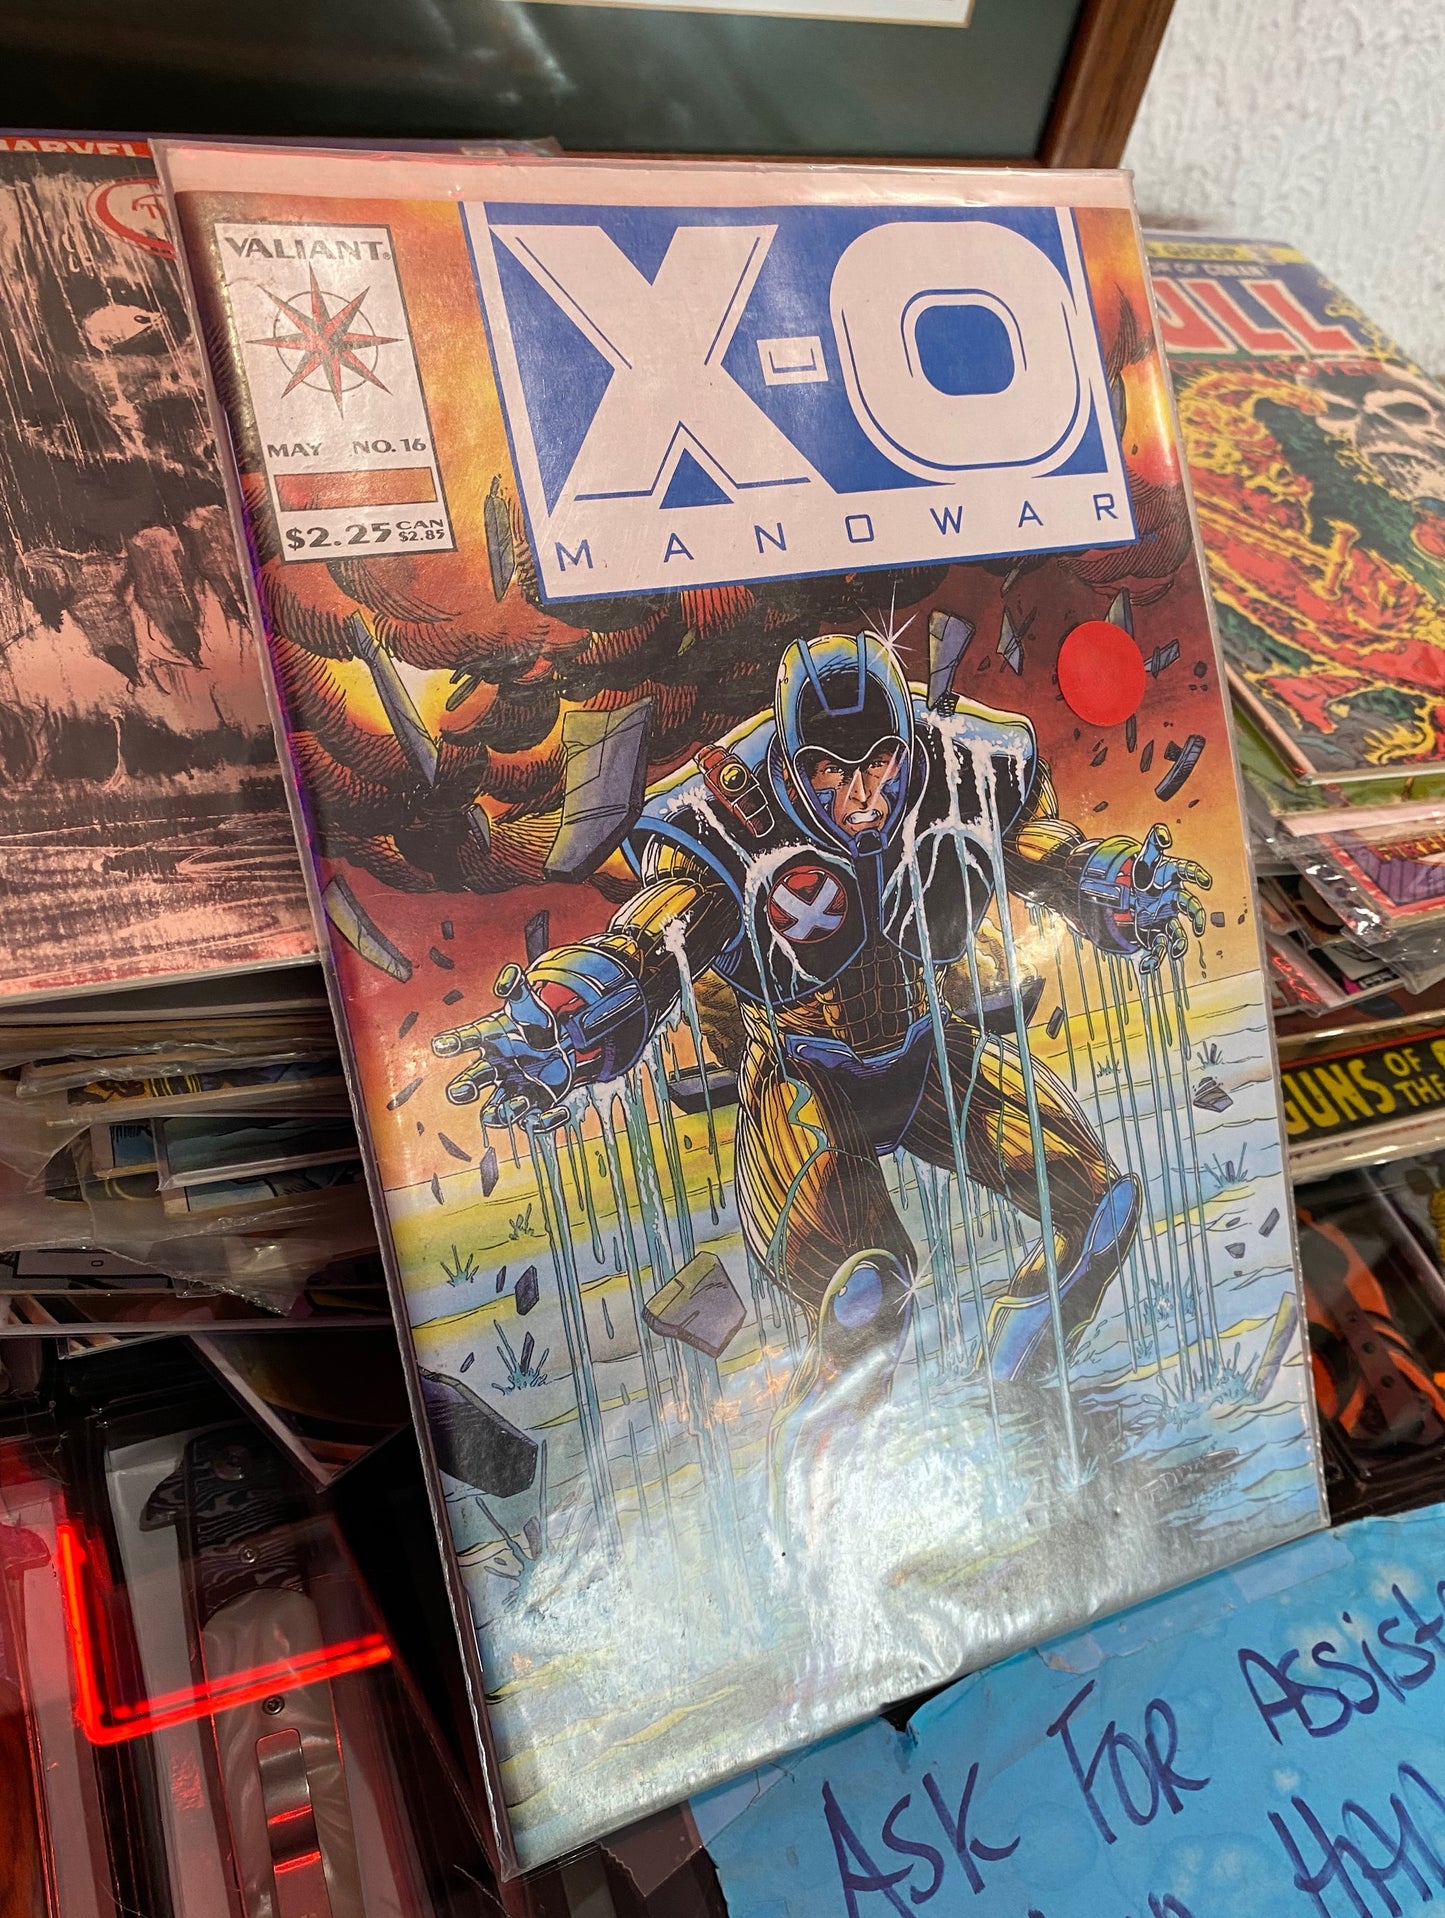 Valiant: X-O Manowar May No.16